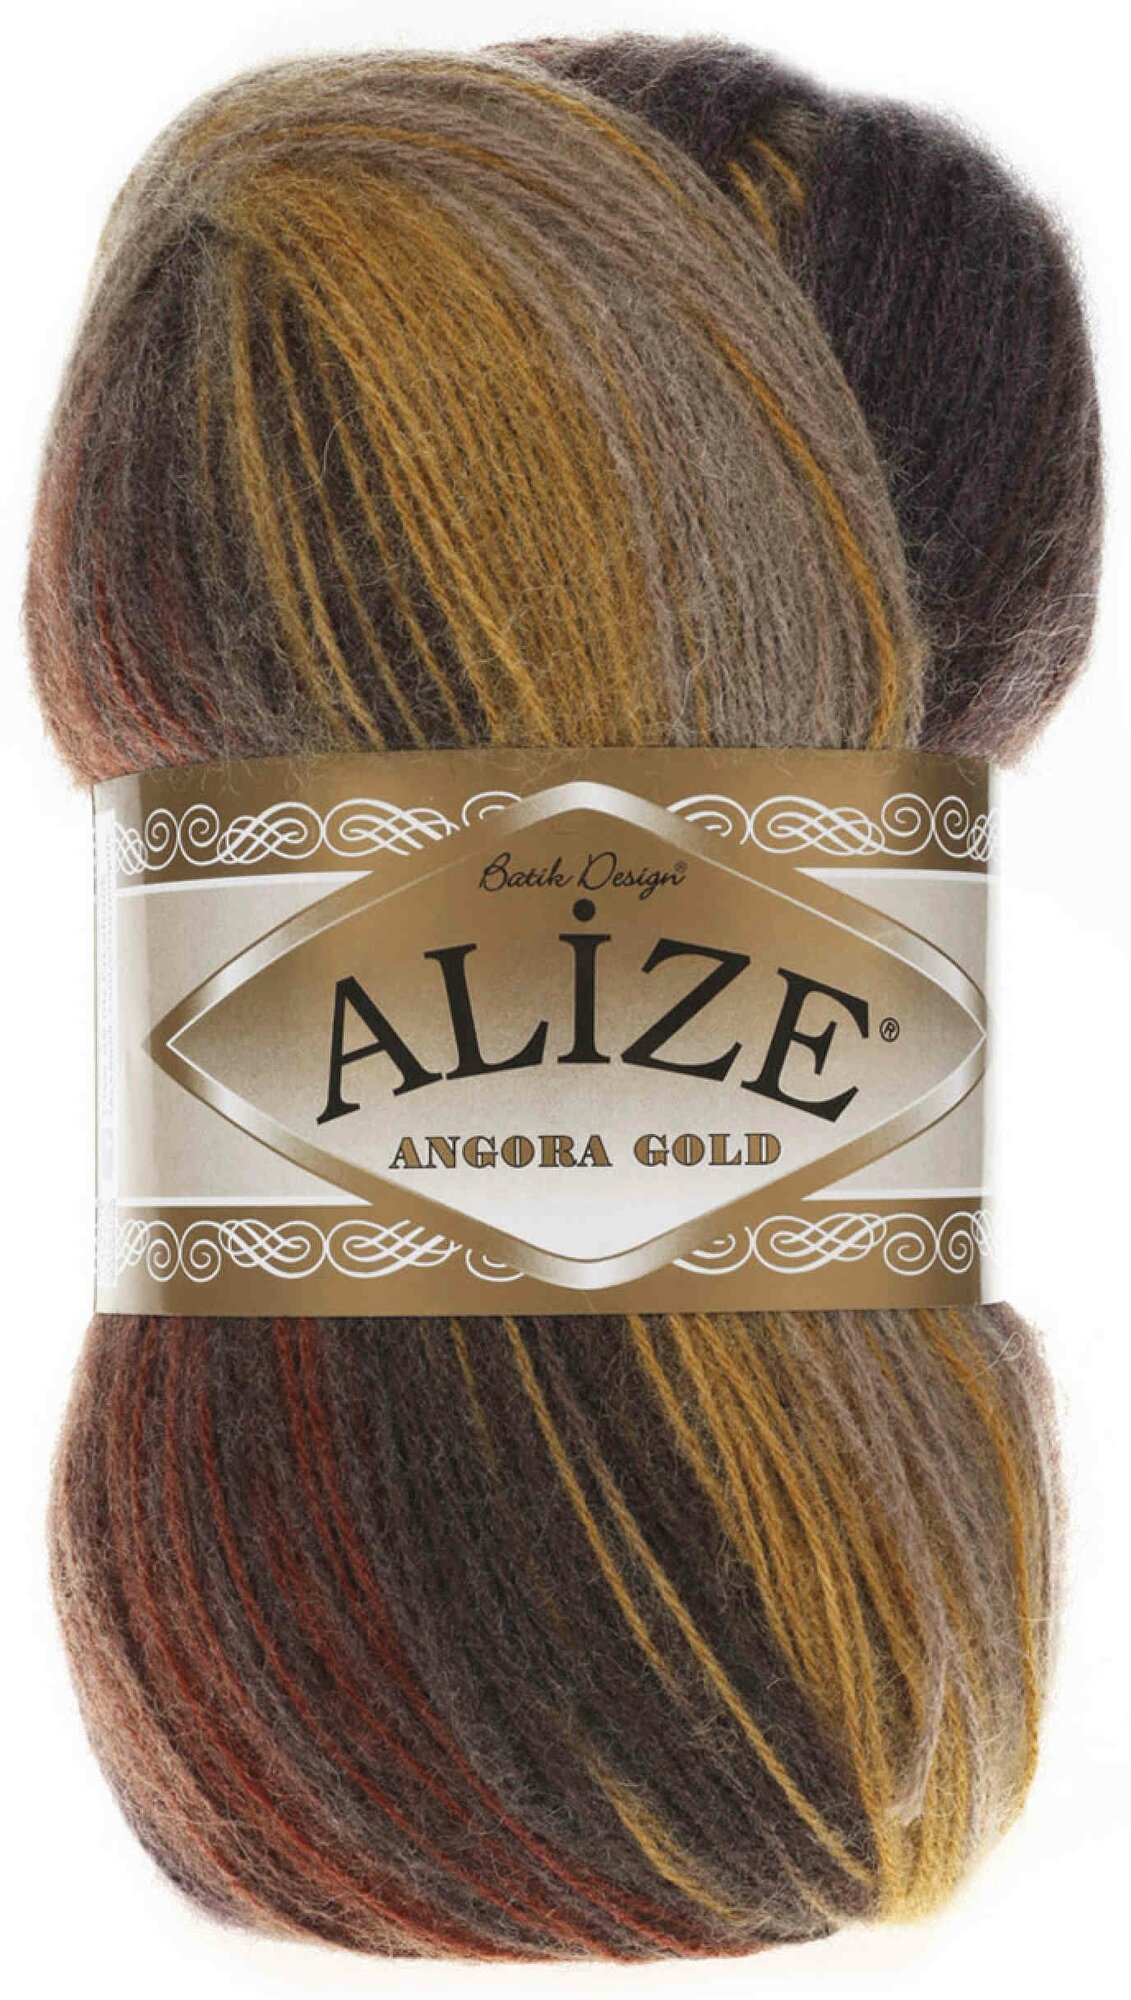 Пряжа Alize Angora Gold Batik серый-охра-коричневый (3379), 80%акрил/20%шерсть, 550м, 100г, 1шт